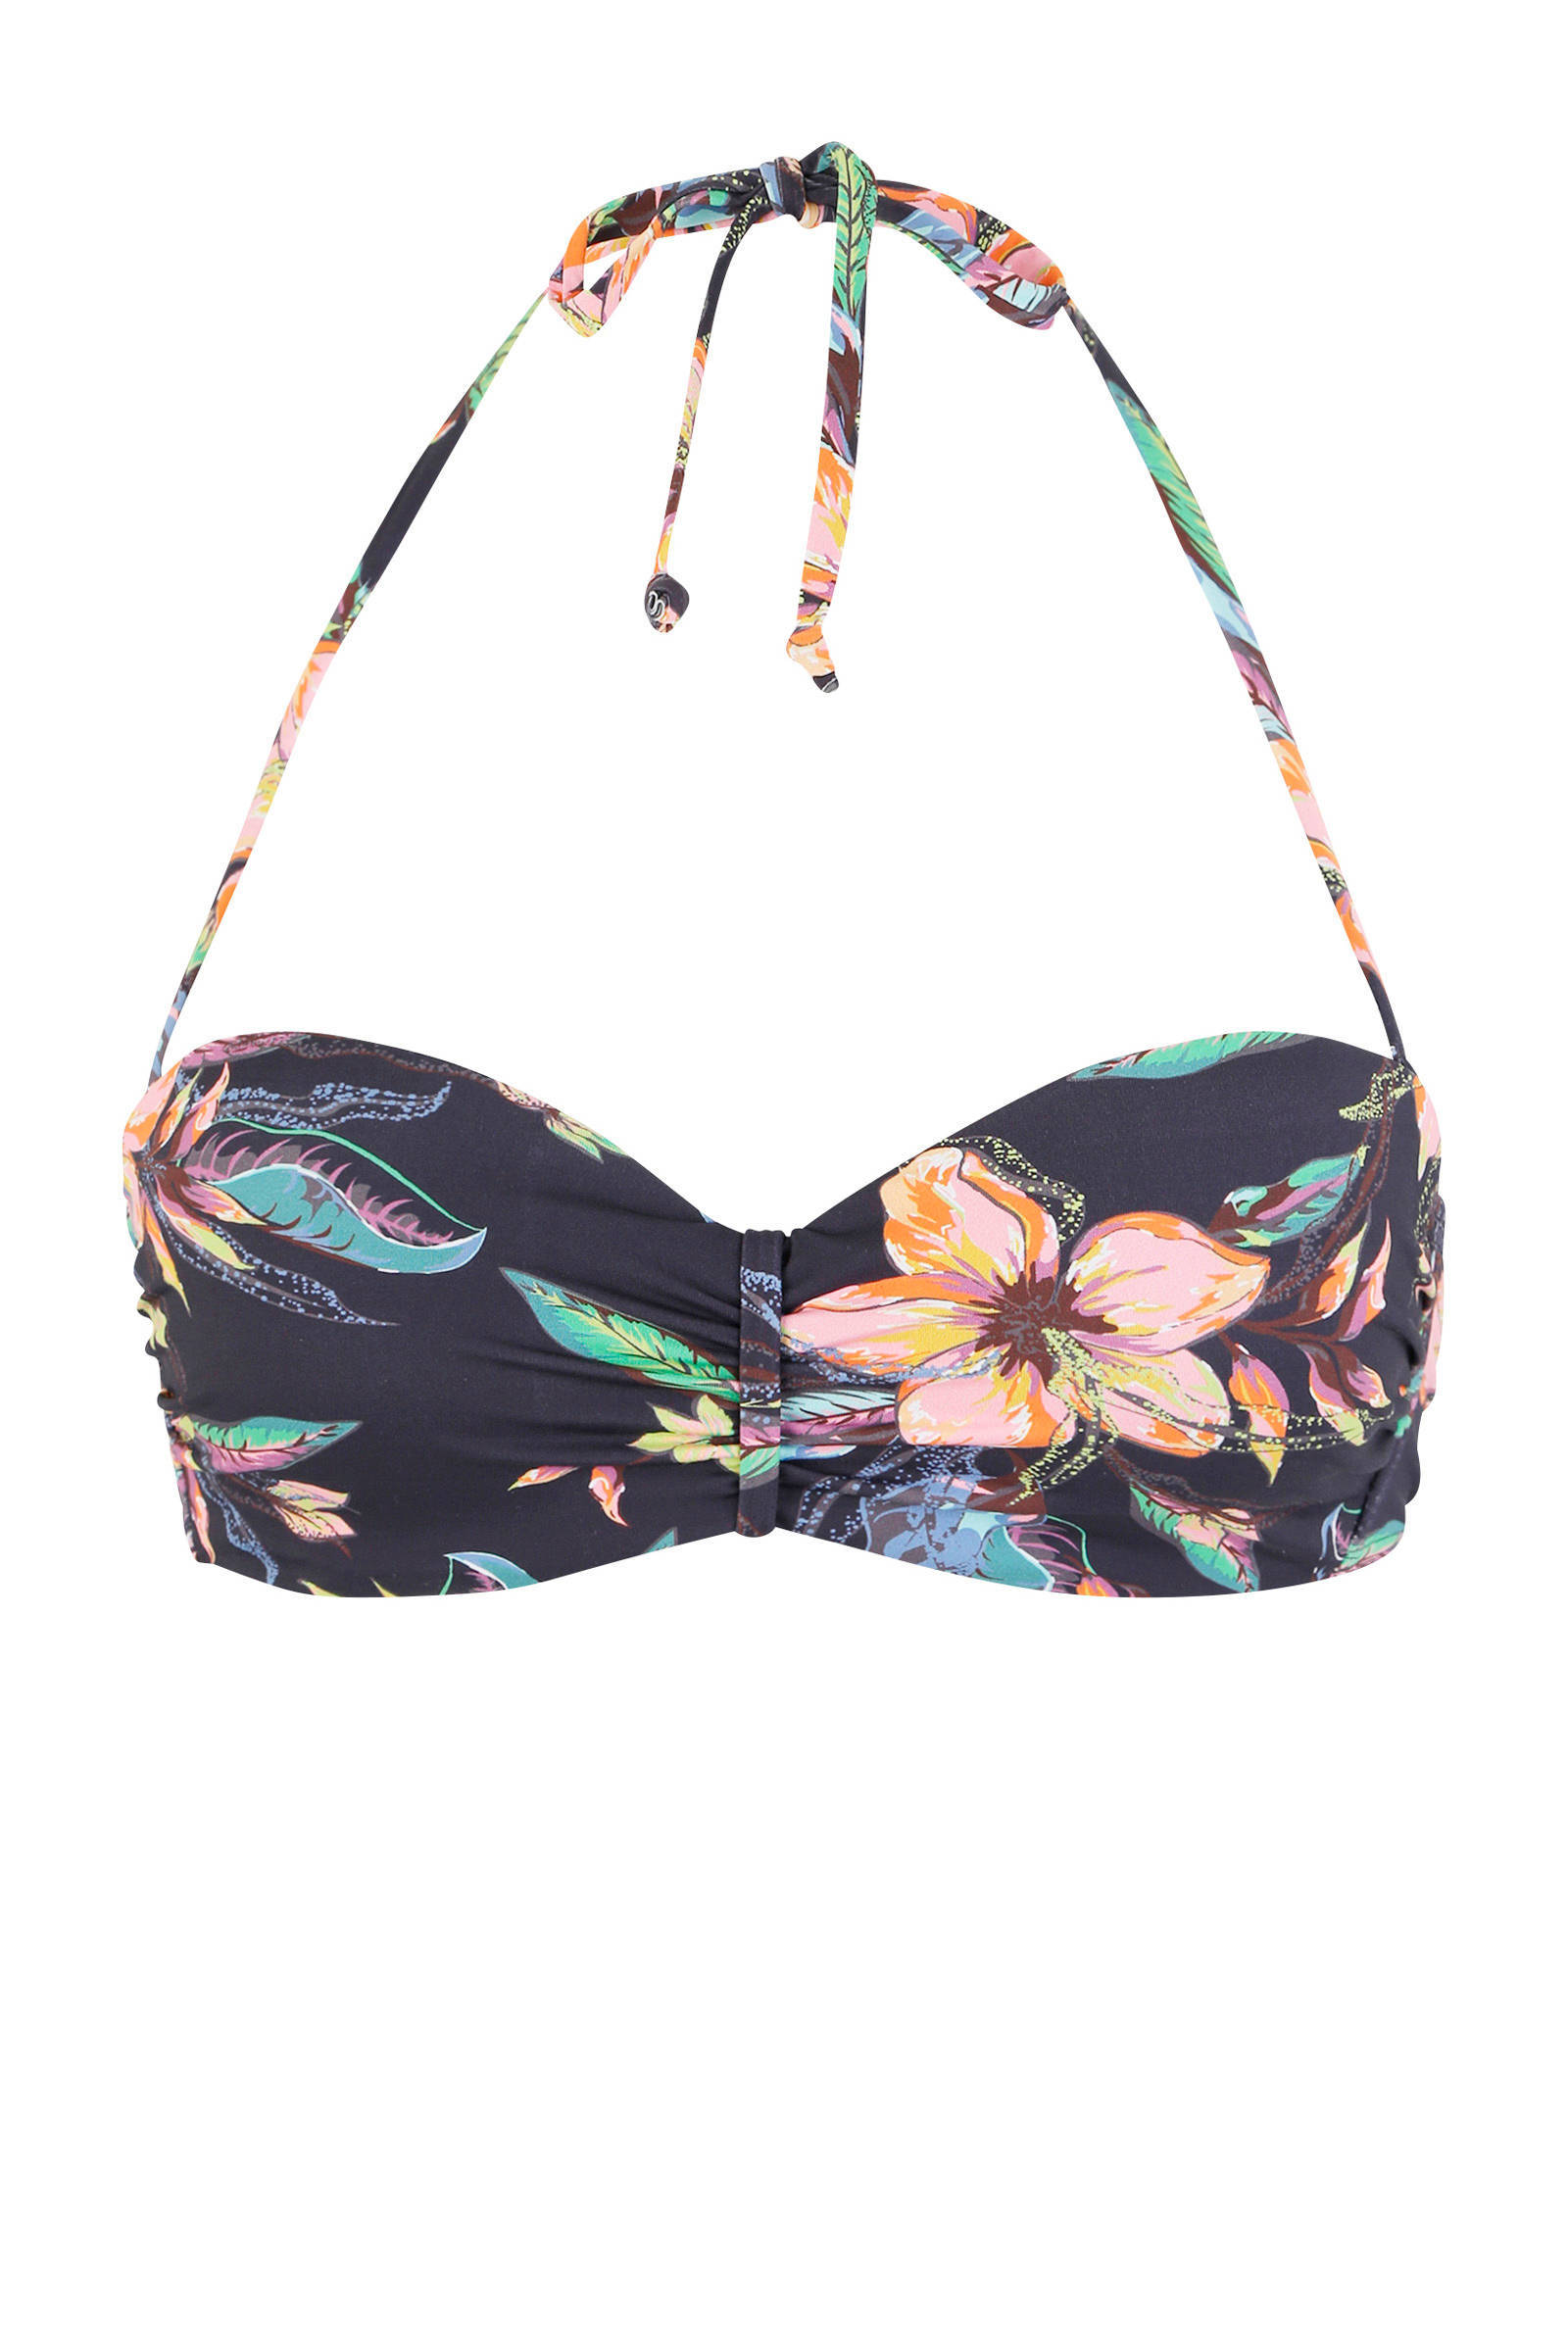 Lascana gebloemde strapless bandeau bikinitop donkergrijs/blauw/roze online kopen